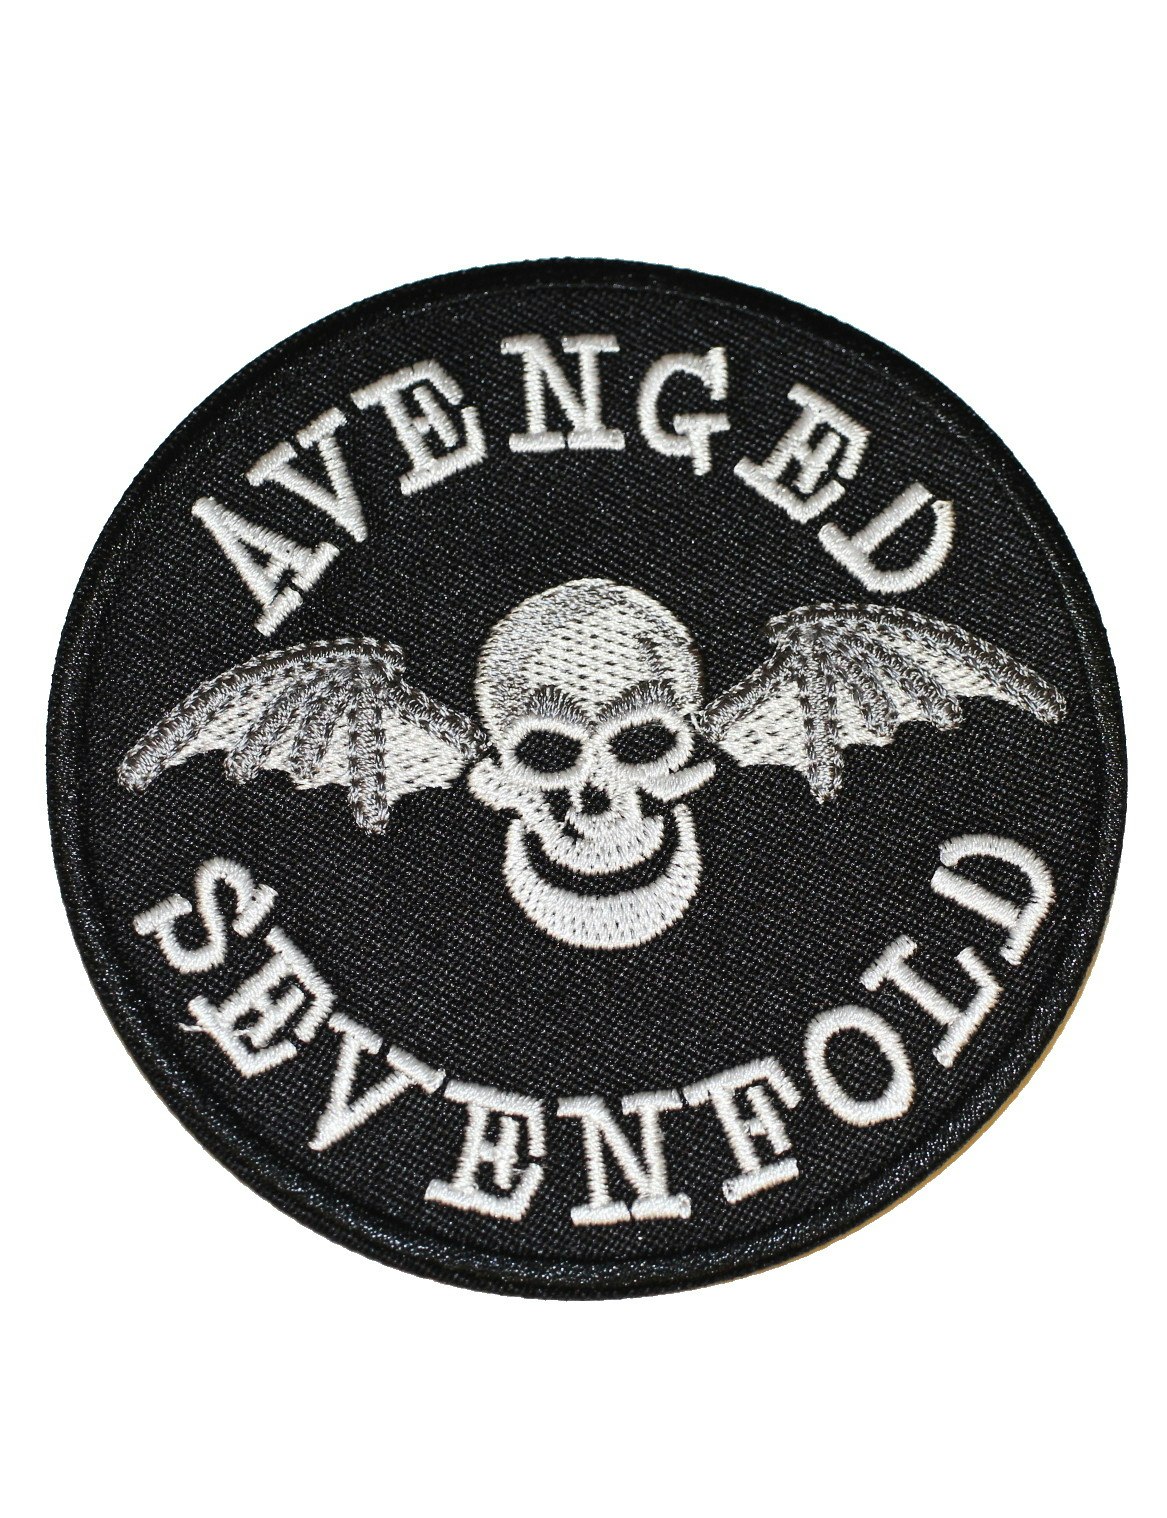 Avenged sevenfold logo patch